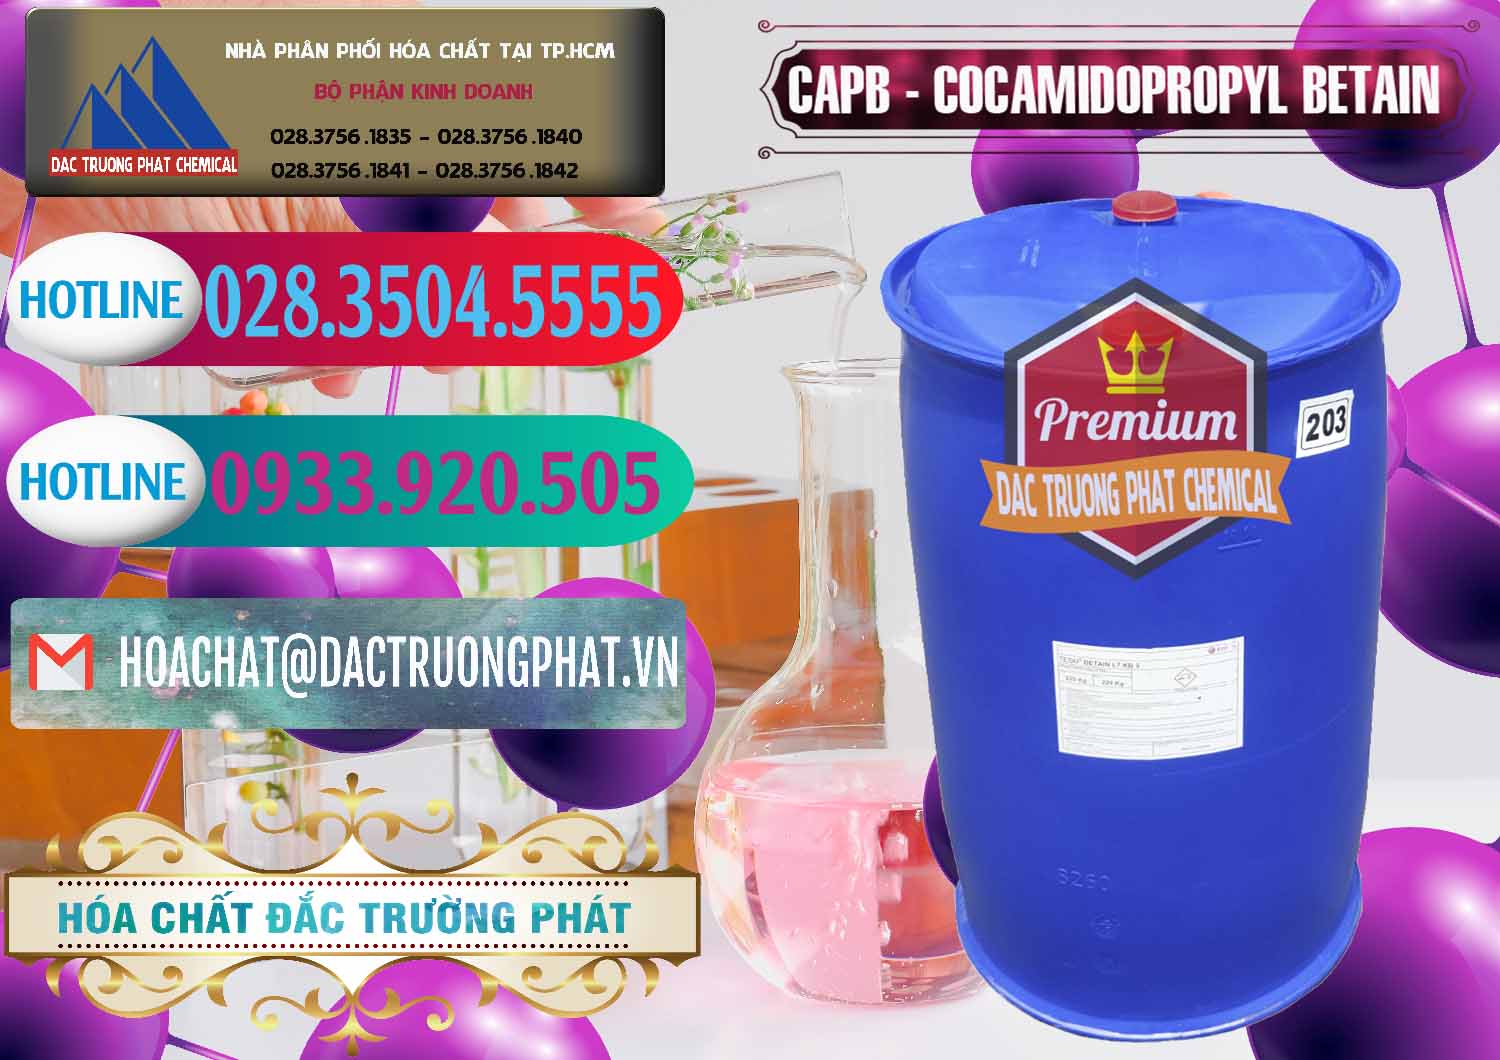 Nơi kinh doanh - bán Cocamidopropyl Betaine - CAPB Tego Indonesia - 0327 - Nhà nhập khẩu & cung cấp hóa chất tại TP.HCM - truongphat.vn